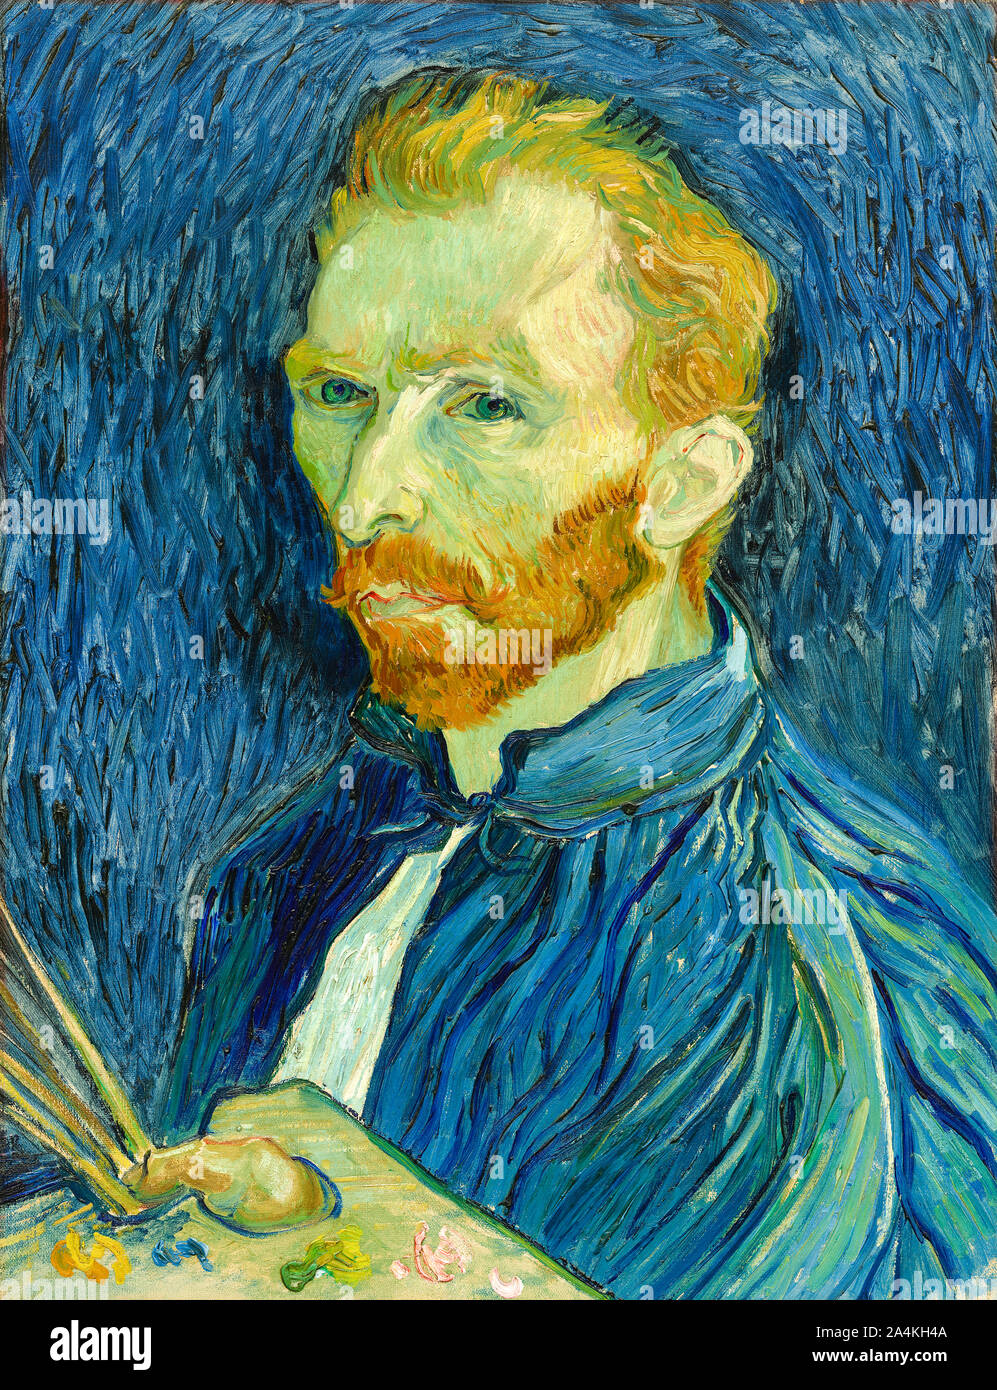 Autoritratto di Vincent van Gogh (1853-1890) olandese post-pittore impressionista dipinta in Saint-Paul-de-Mausole asilo vicino a Saint-Rémy nel 1889 raffigurato come un artista. Il dipinto è ora nella raccolta della National Gallery of Art di Washington D.C., USA. Foto Stock